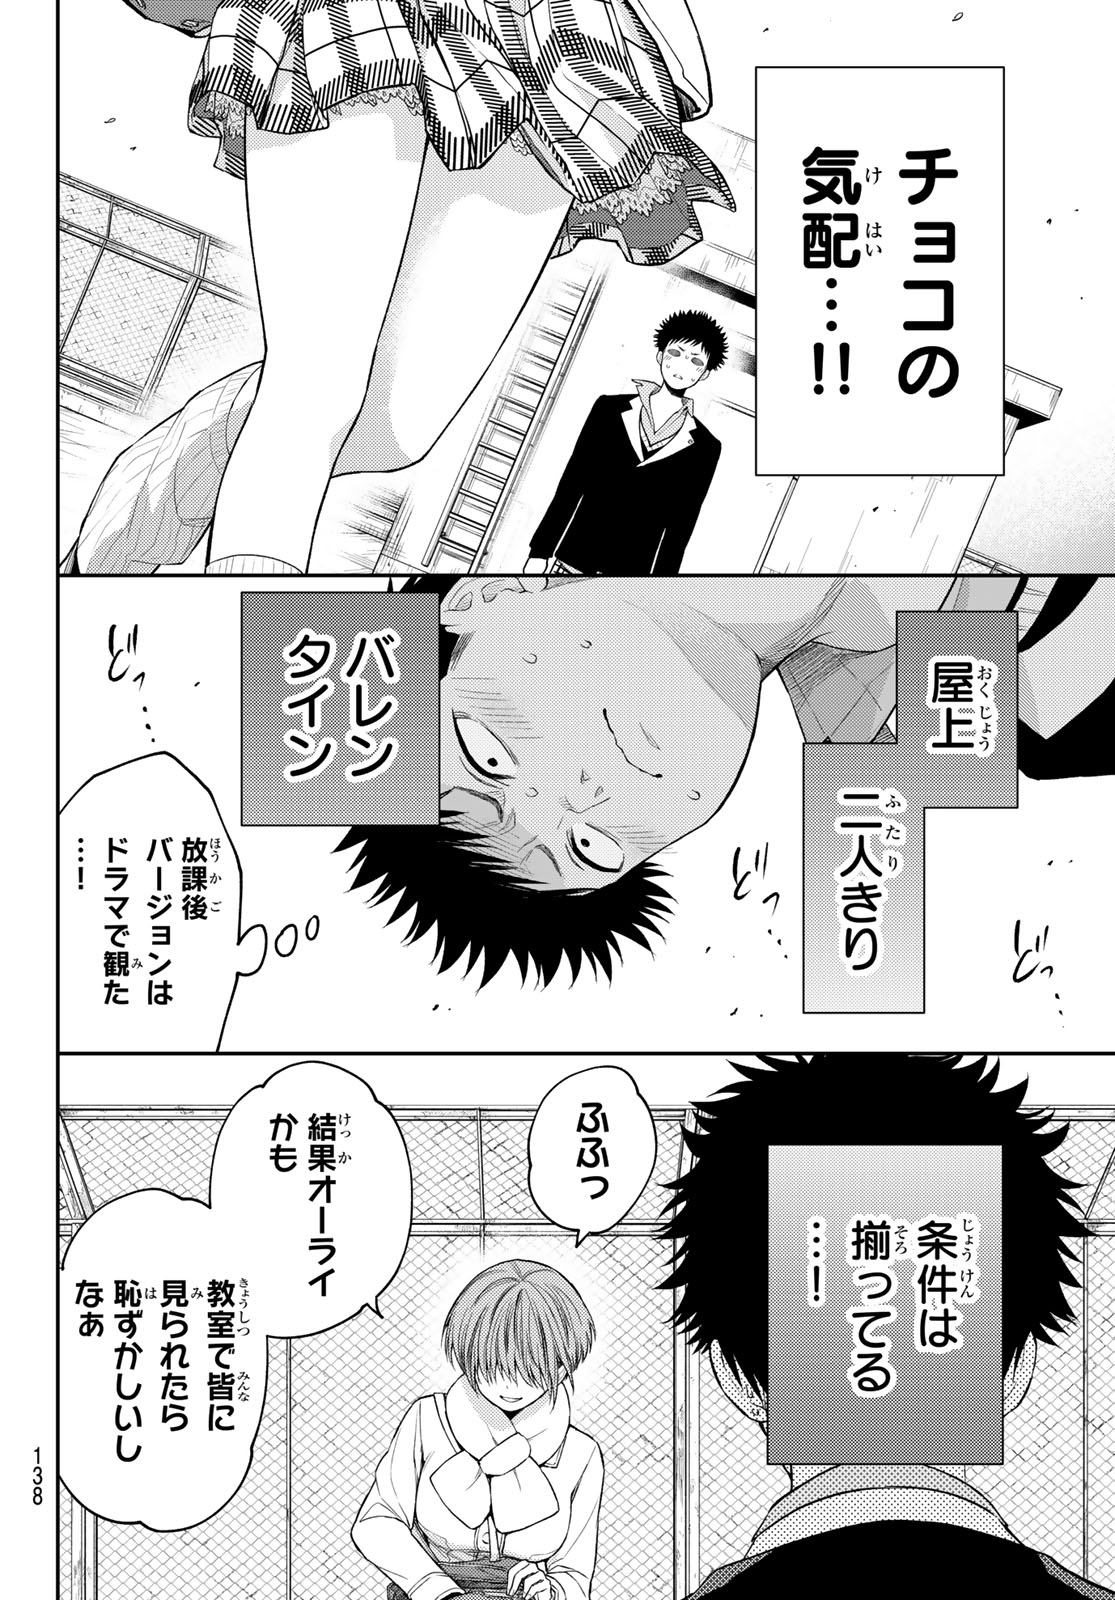 Kuroiwa Medaka ni Watashi no Kawaii ga Tsuujinai - Chapter 127 - Page 8